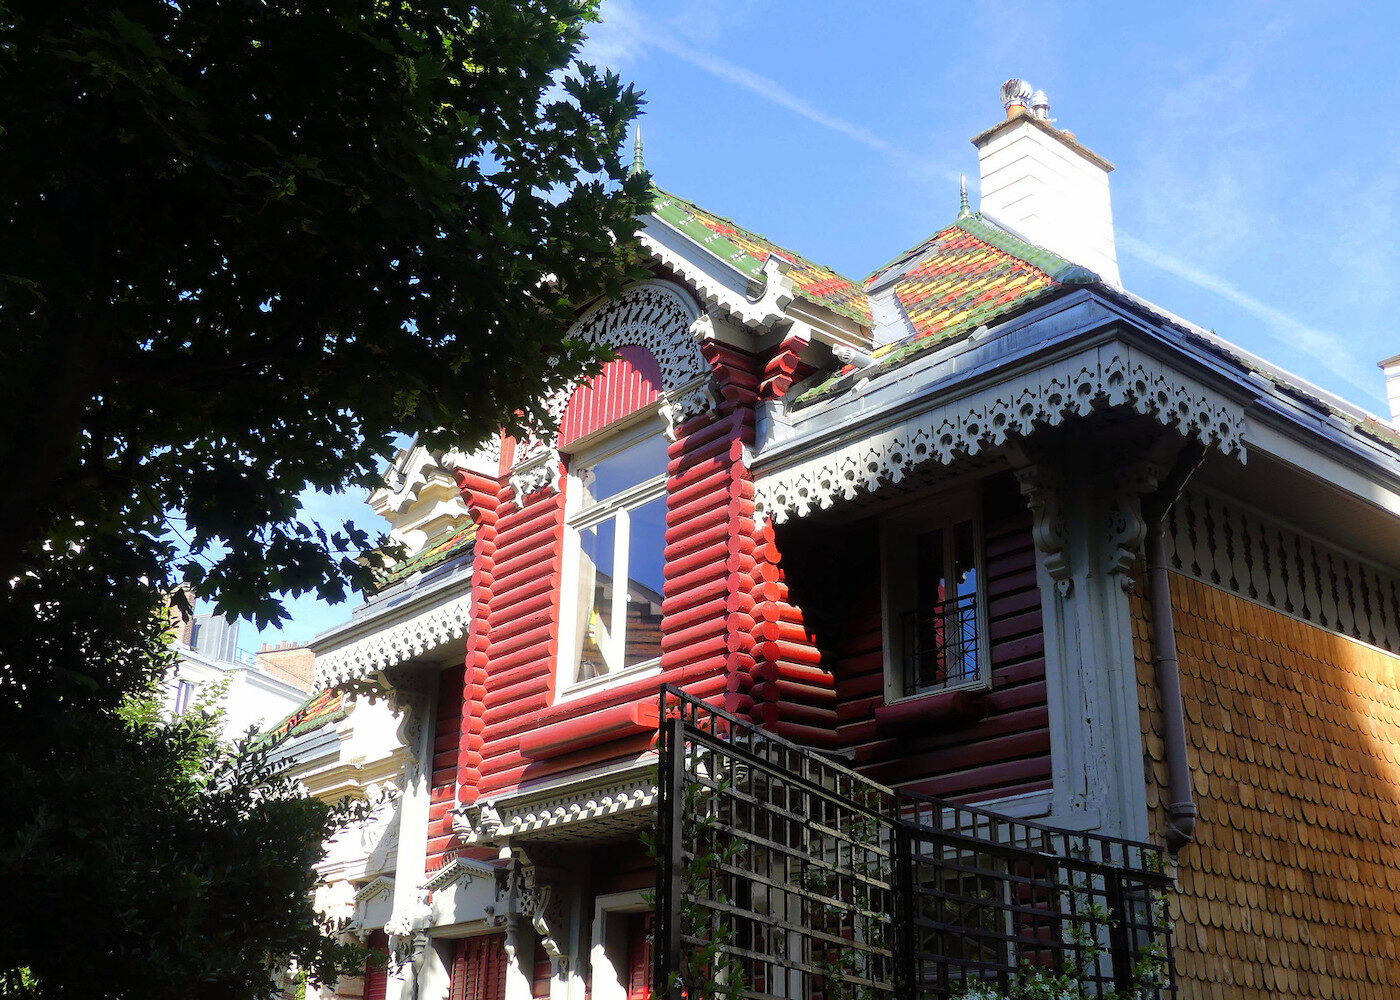 maison traditionnelle russe bois rouge blanc moulure deco exterieure